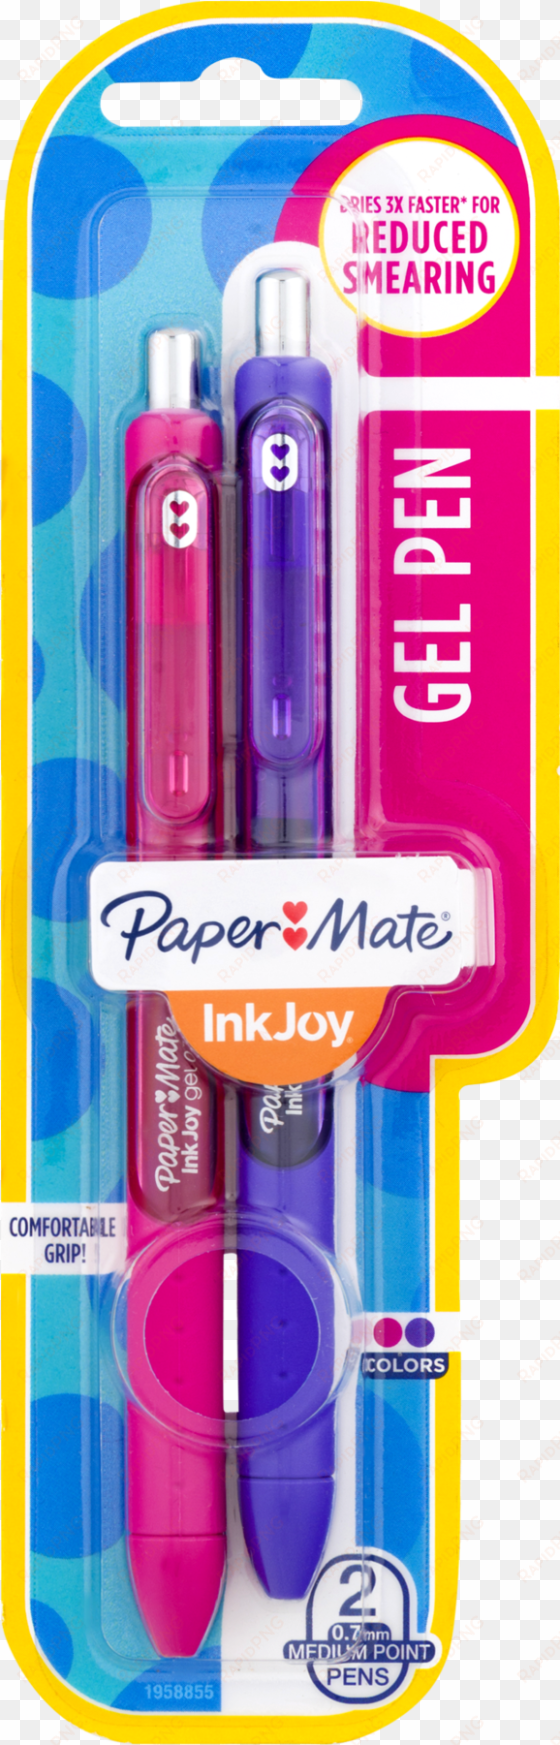 Paper Mate Inkjoy Gel Pen, Medium Point (0.7 Mm), Assorted transparent png image